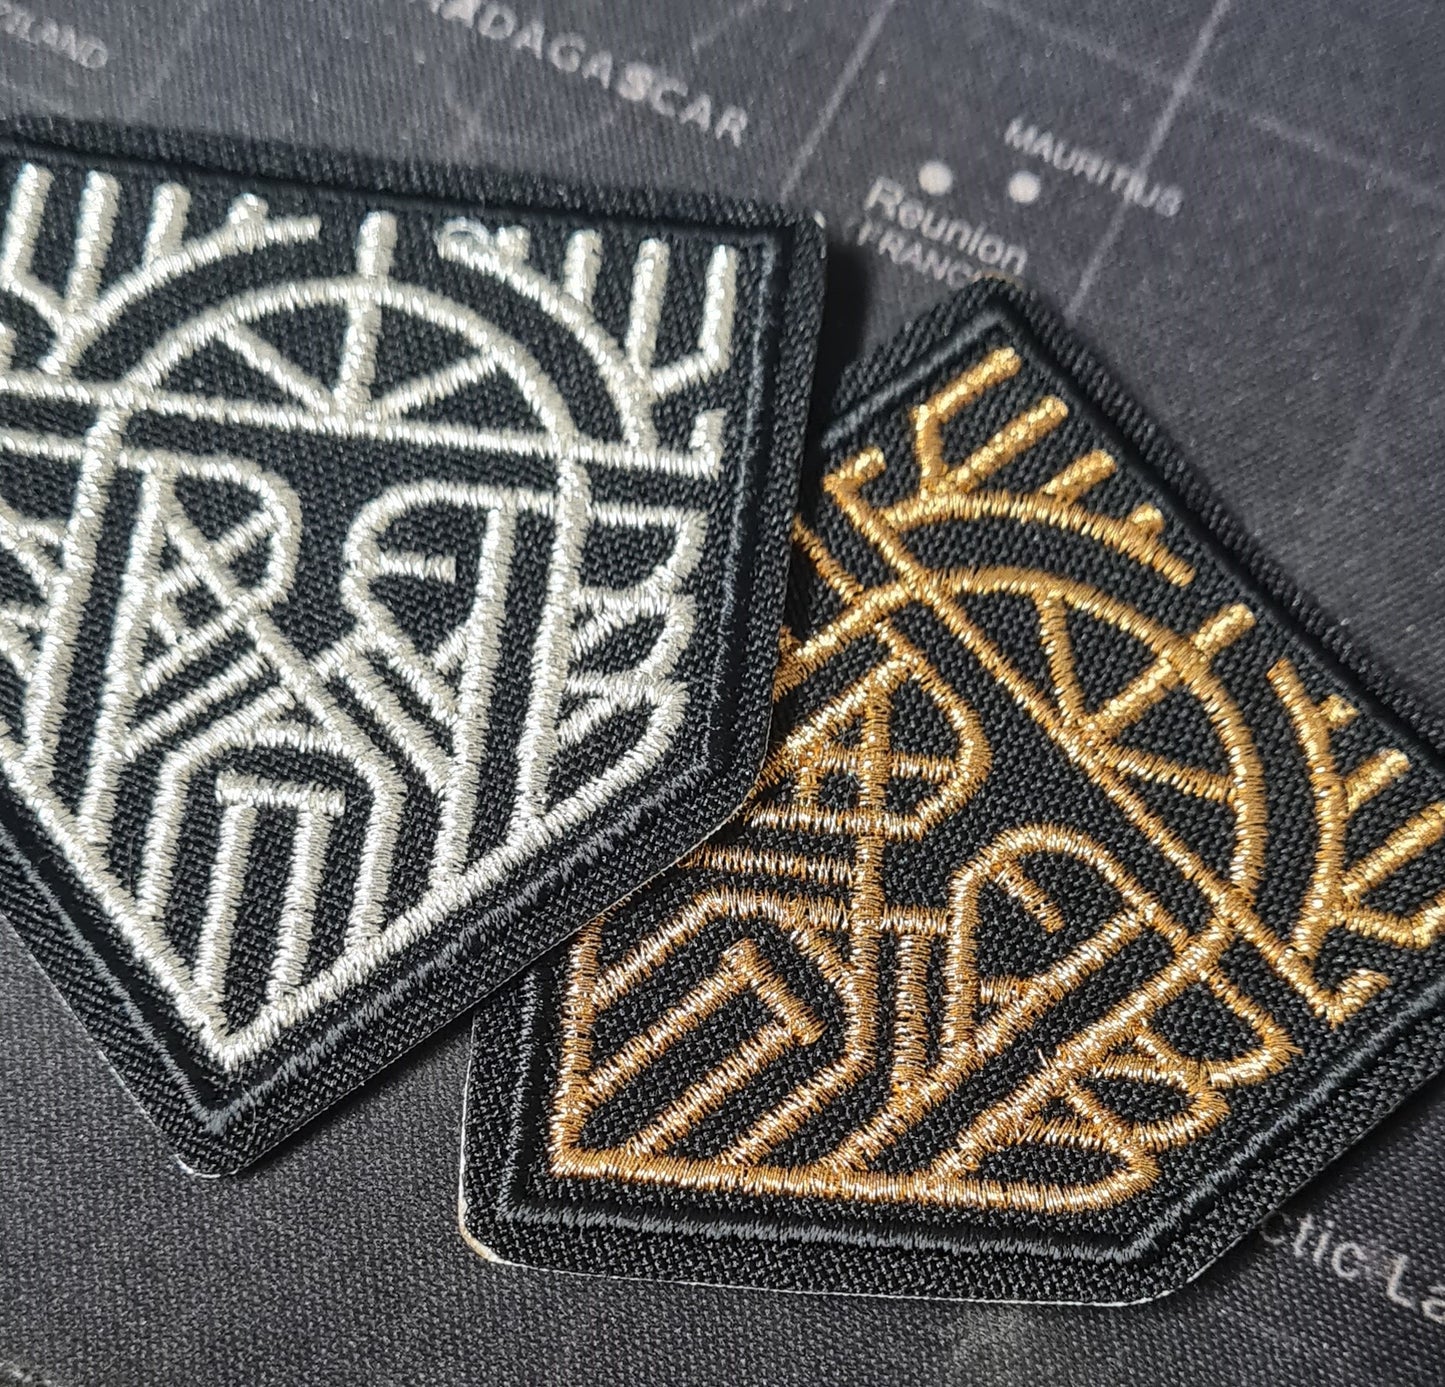 Odin Allfather custom Embroidery Patch